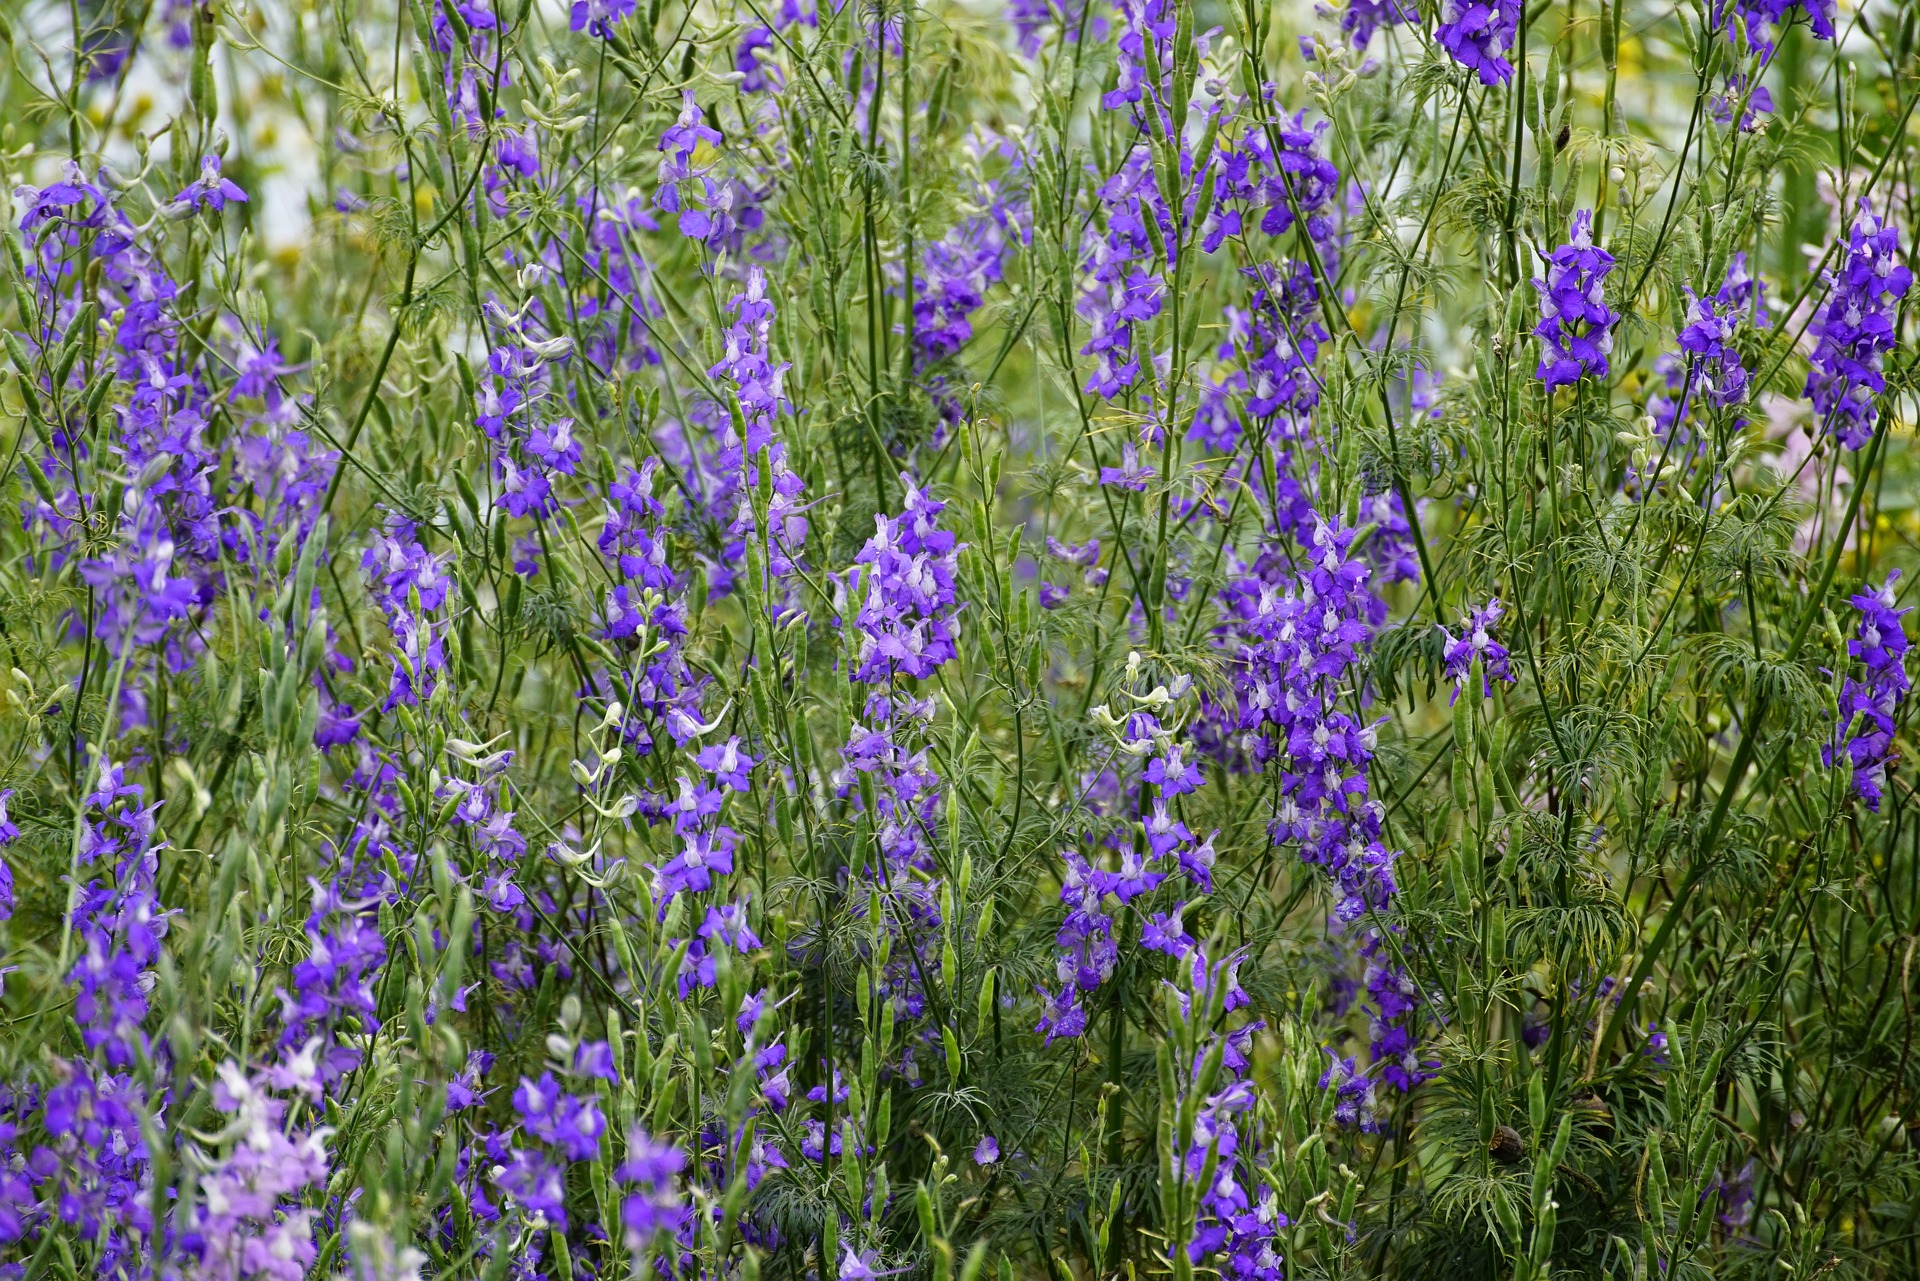 purple delphinium flowers in the field